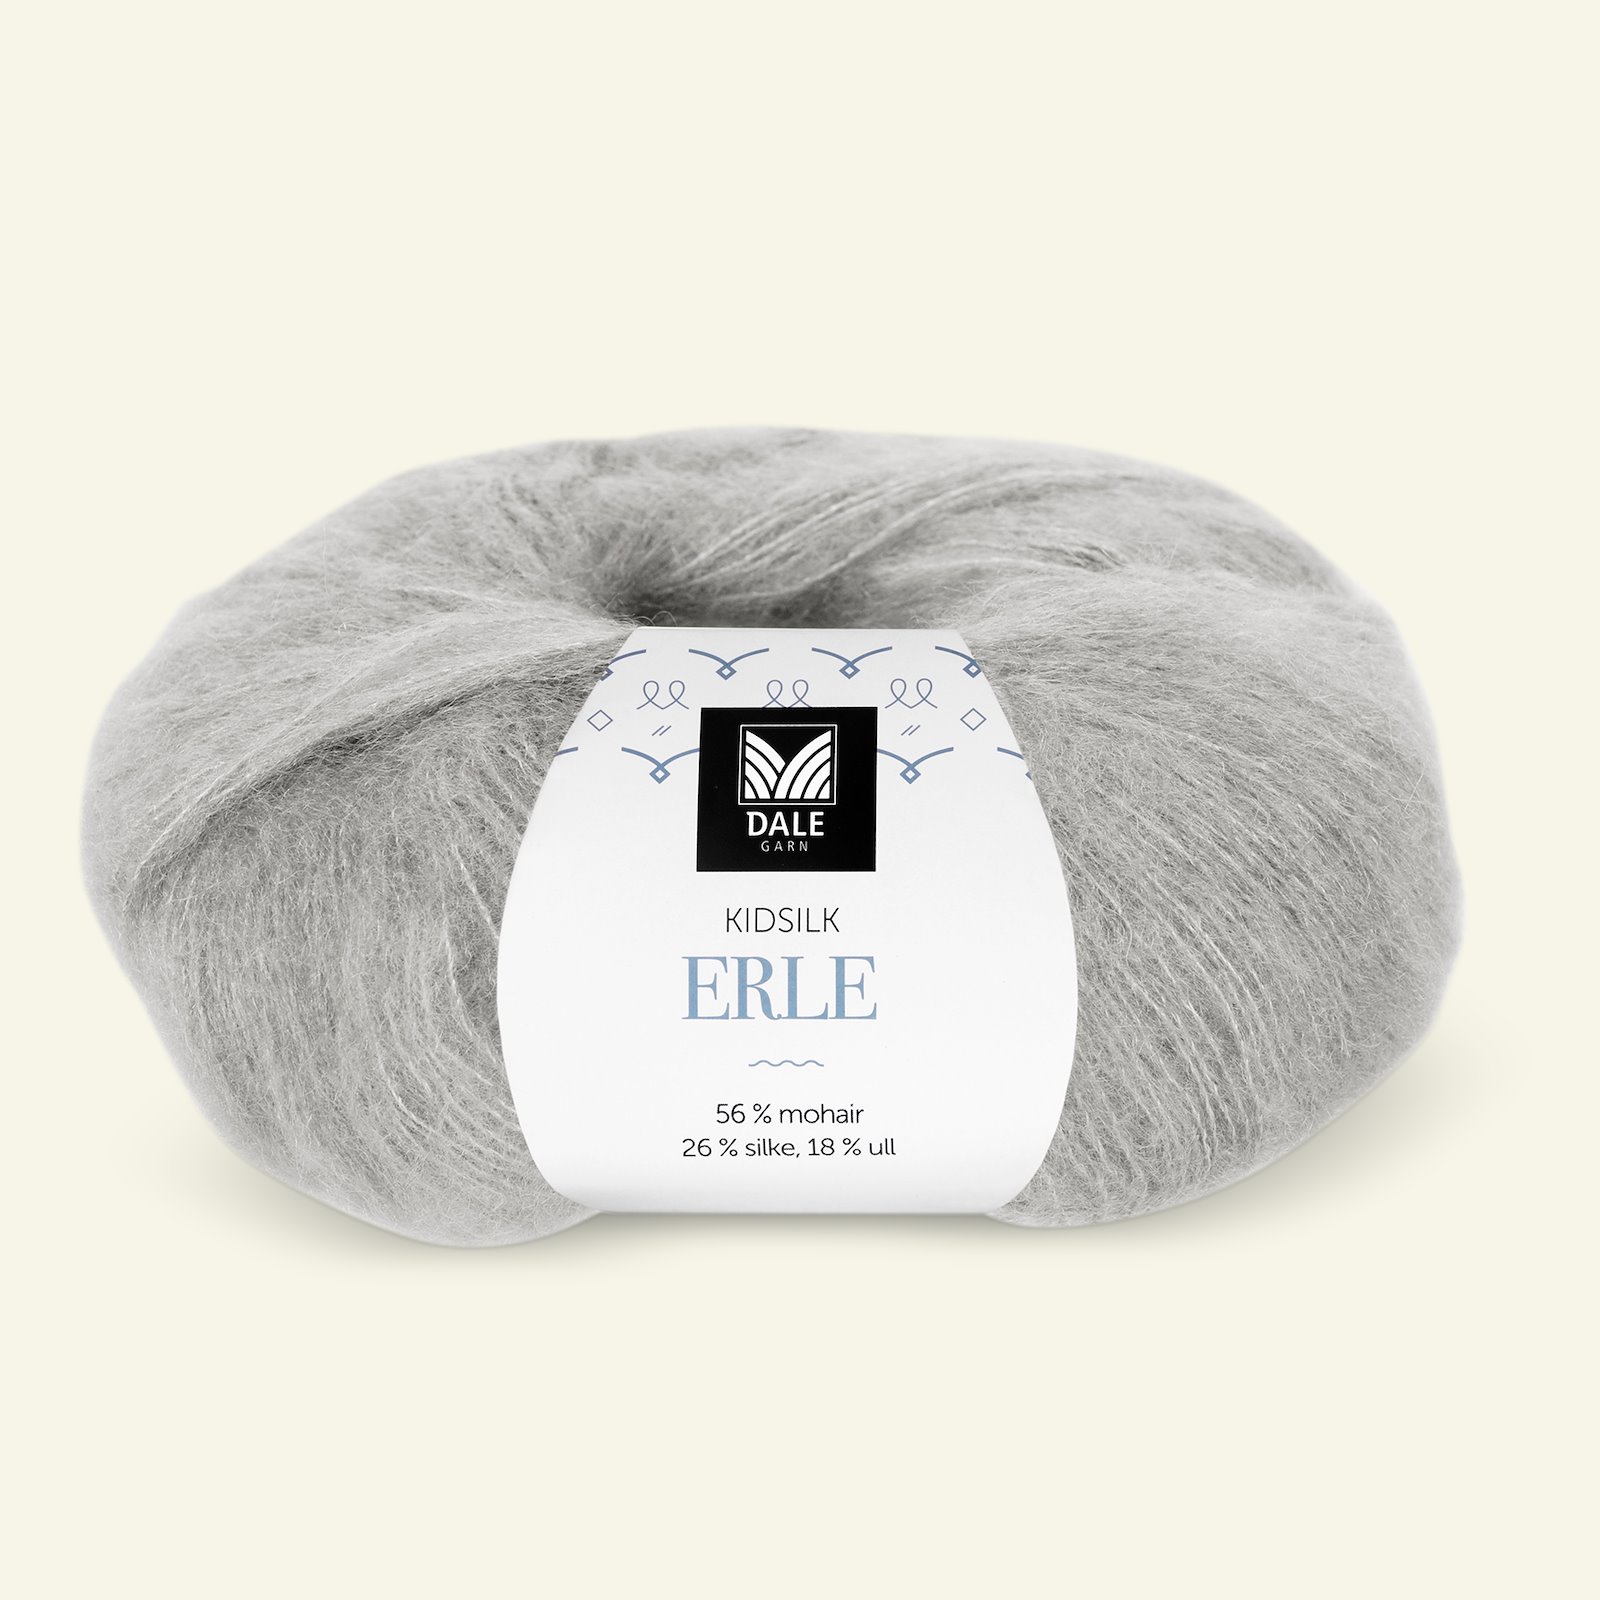 Dale Garn, silk mohair wool yarn "Kidsilk Erle", wine red (3502) 90000779_pack